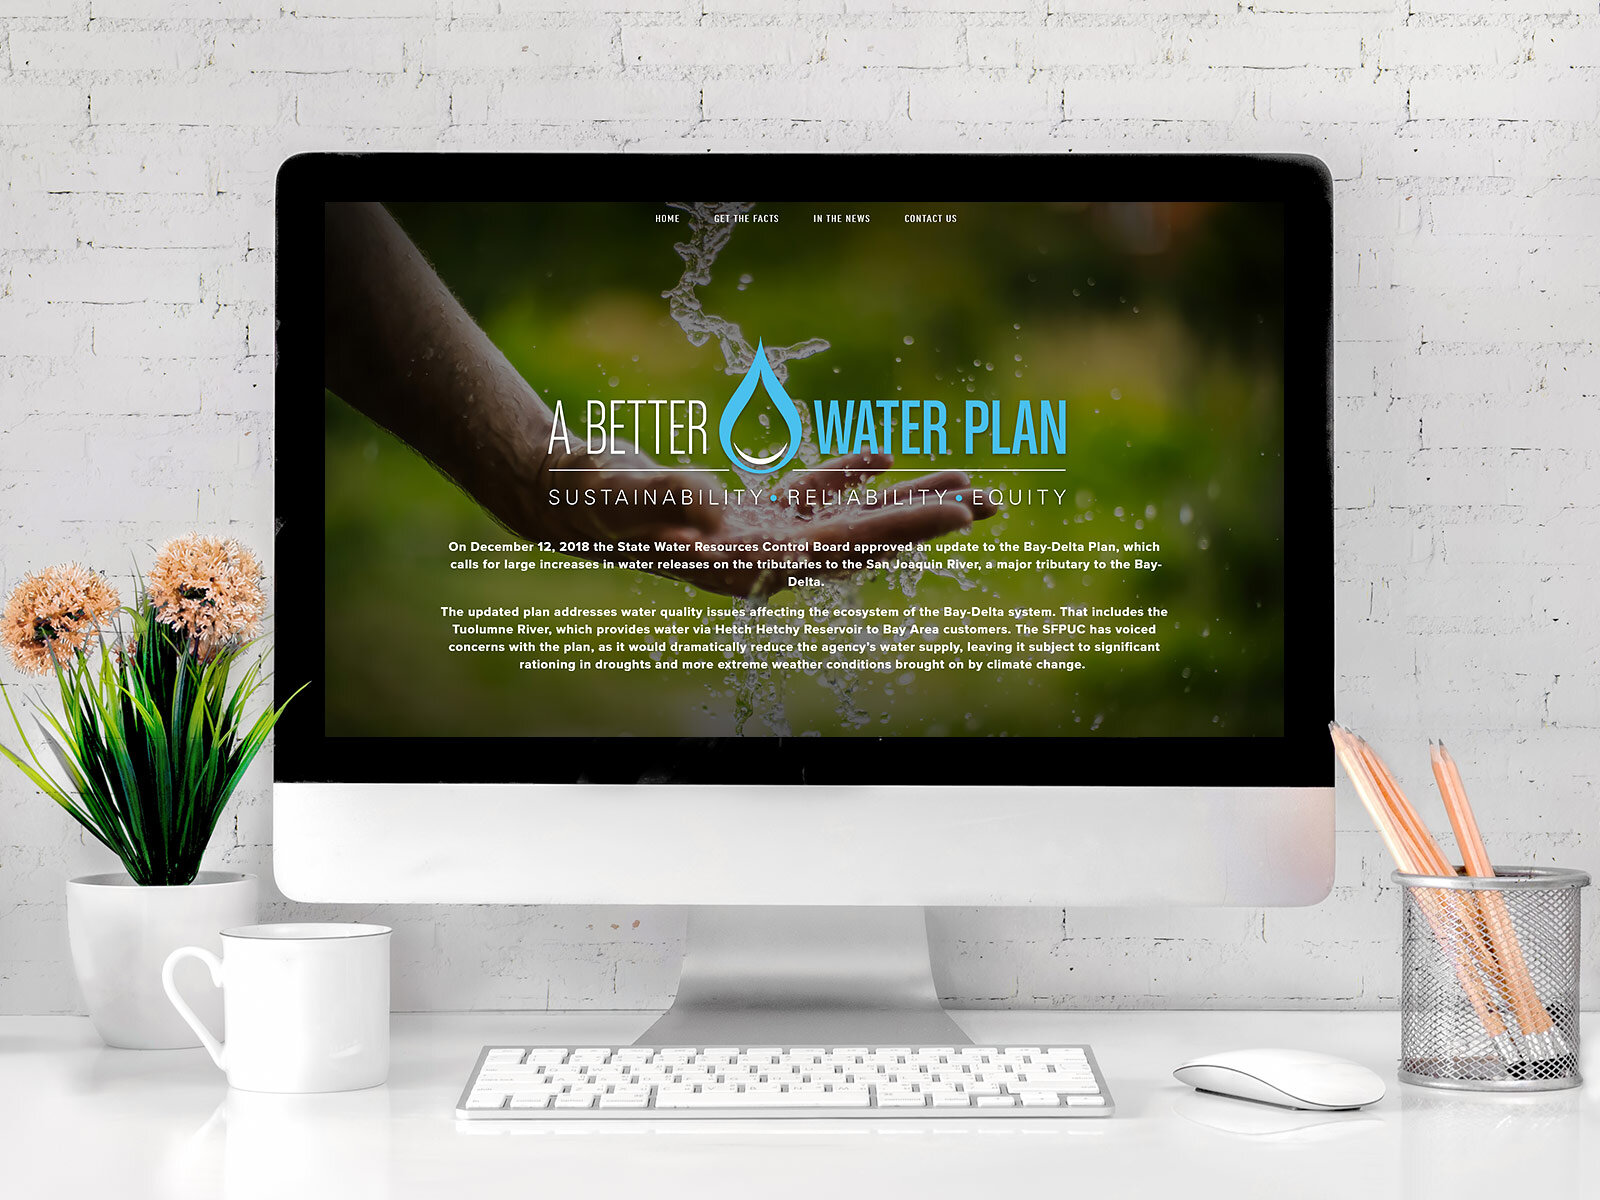 A-Better-Water-Plan-1.jpg